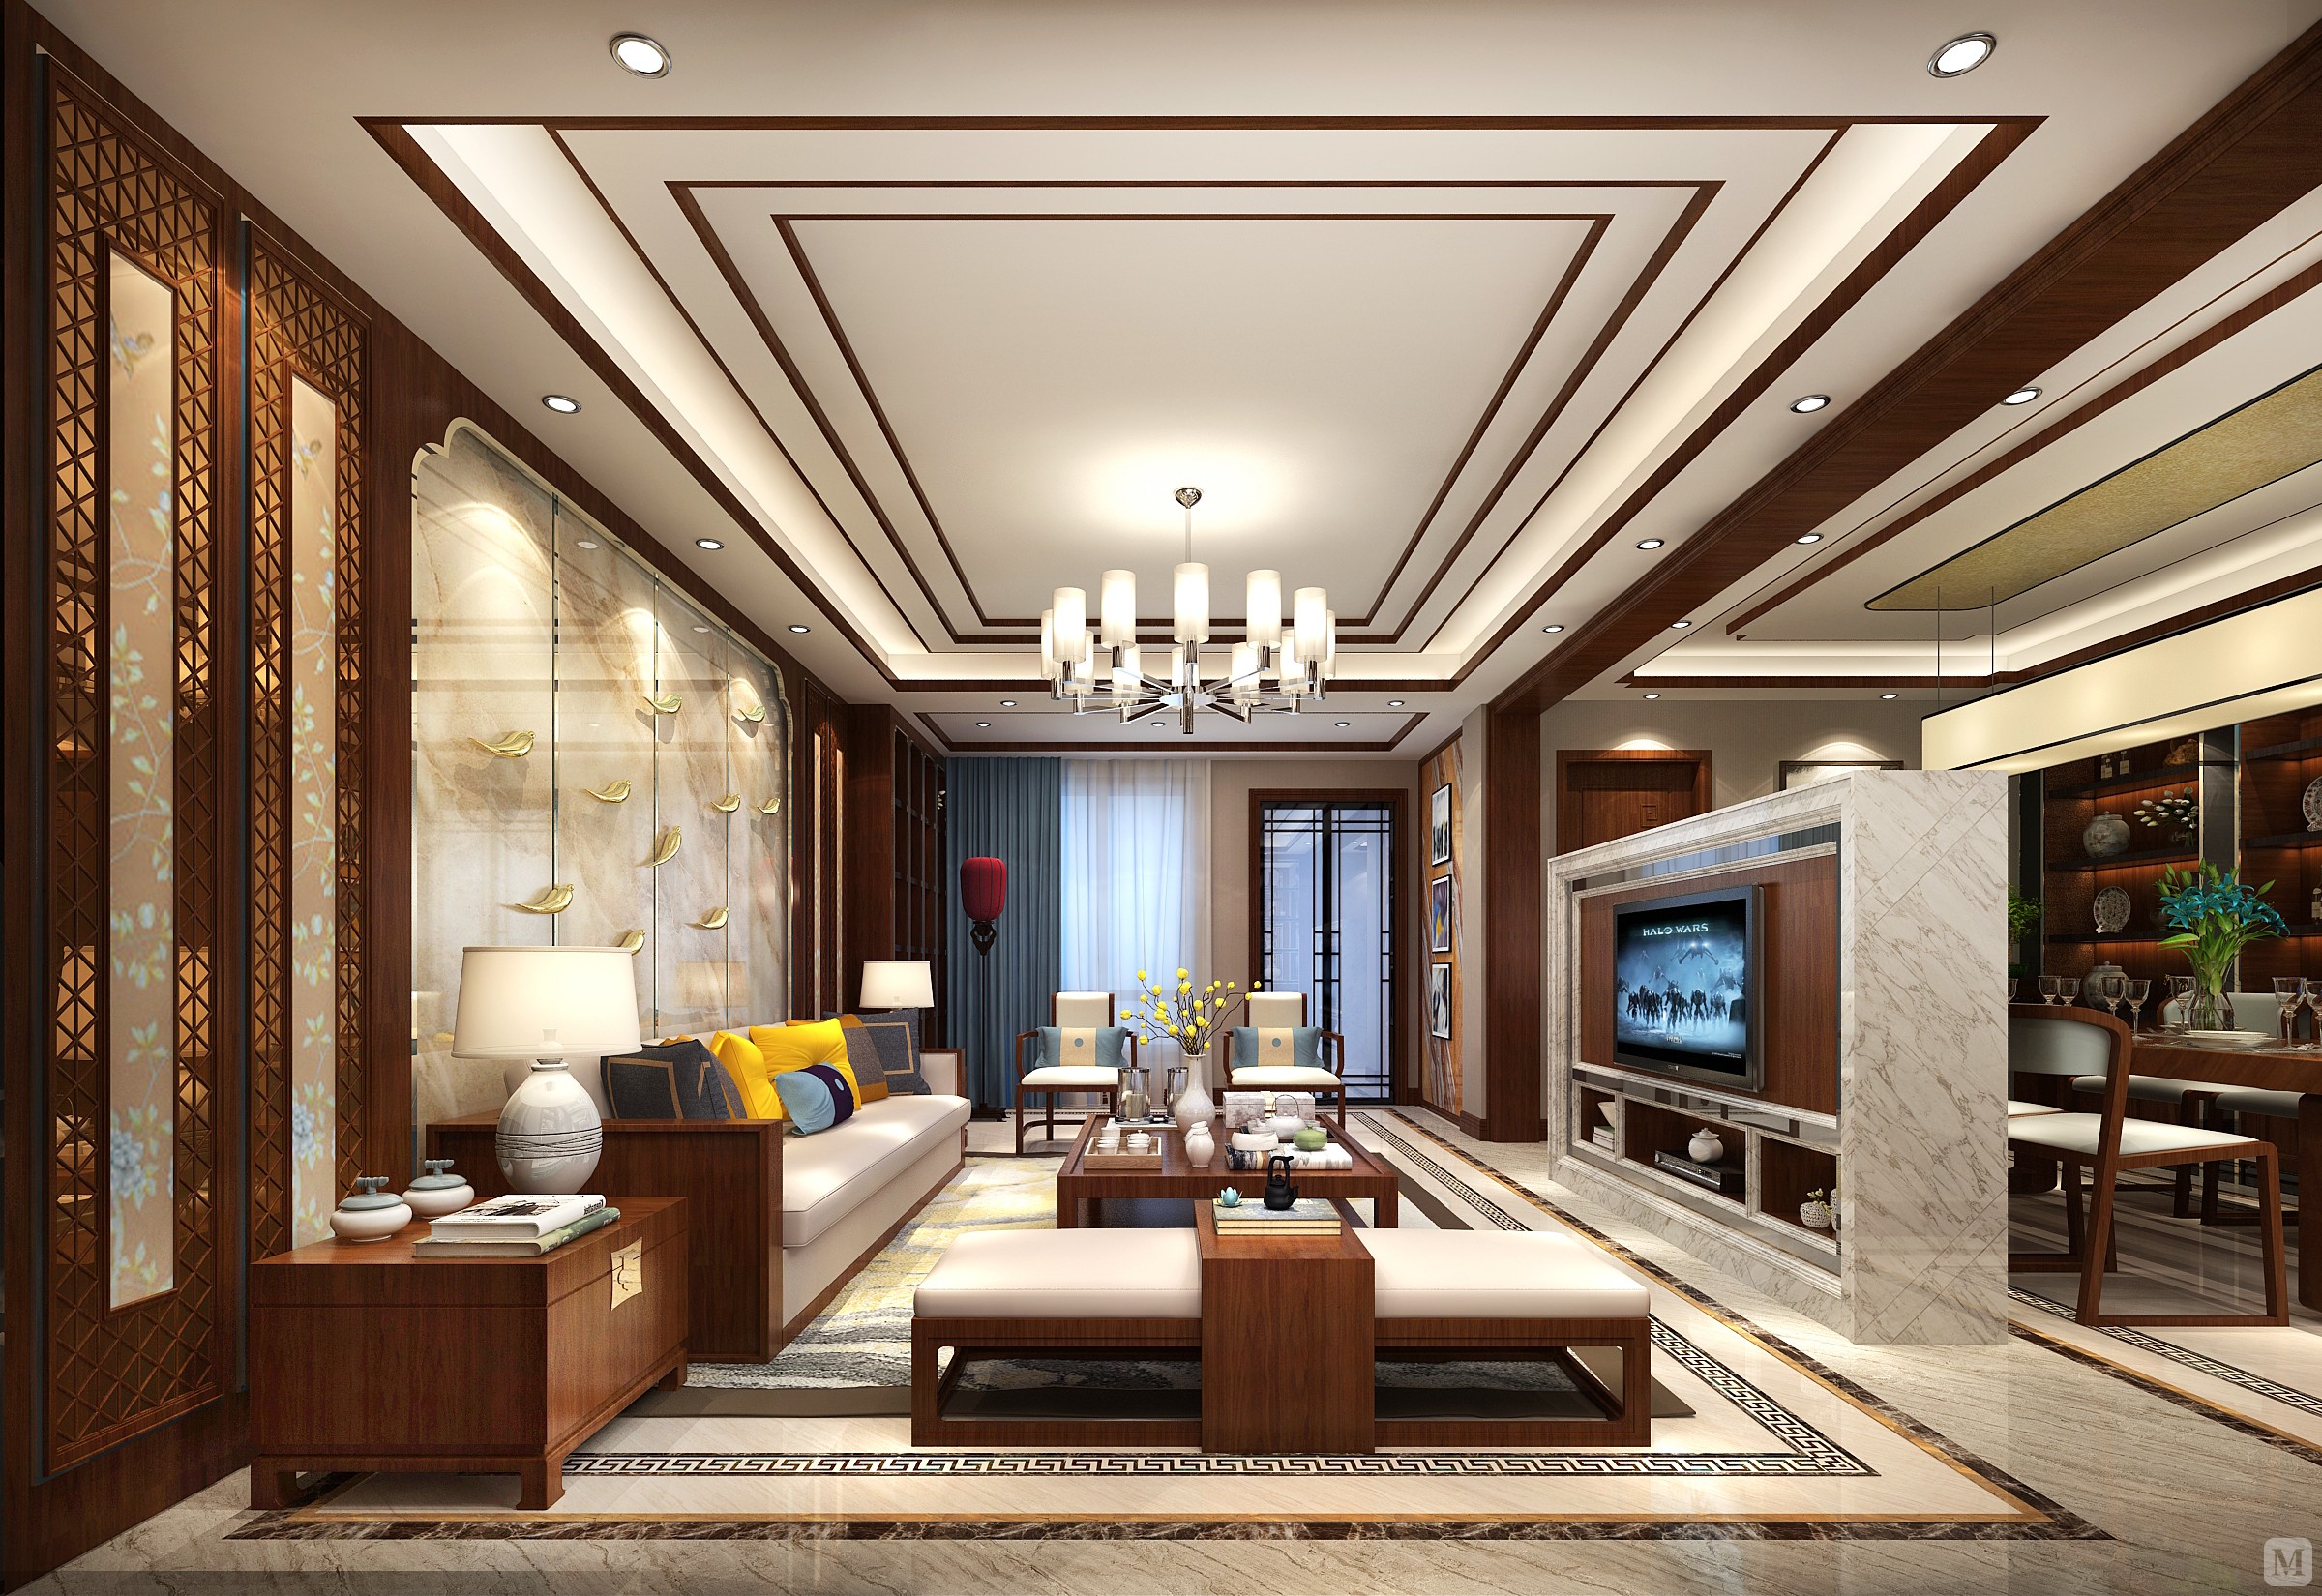 中国传统的室内设计融合了庄重与优雅双重气质,中式风格更多的利用了